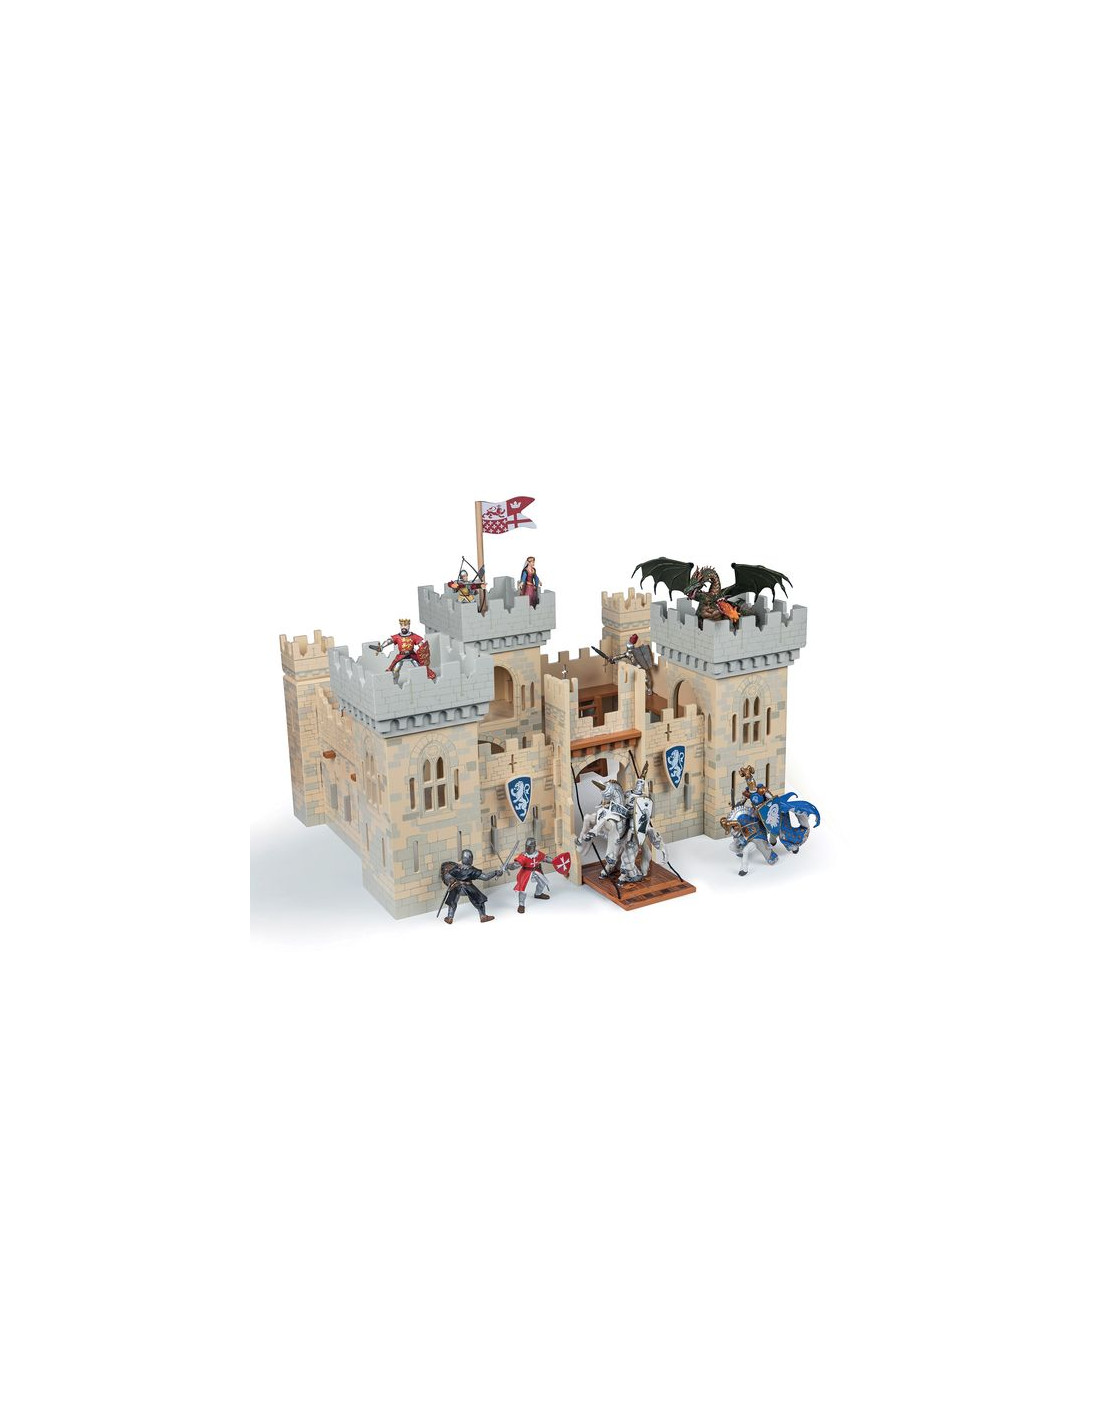 Château fort en bois papo 60053 - château fantastique , jouet Papo